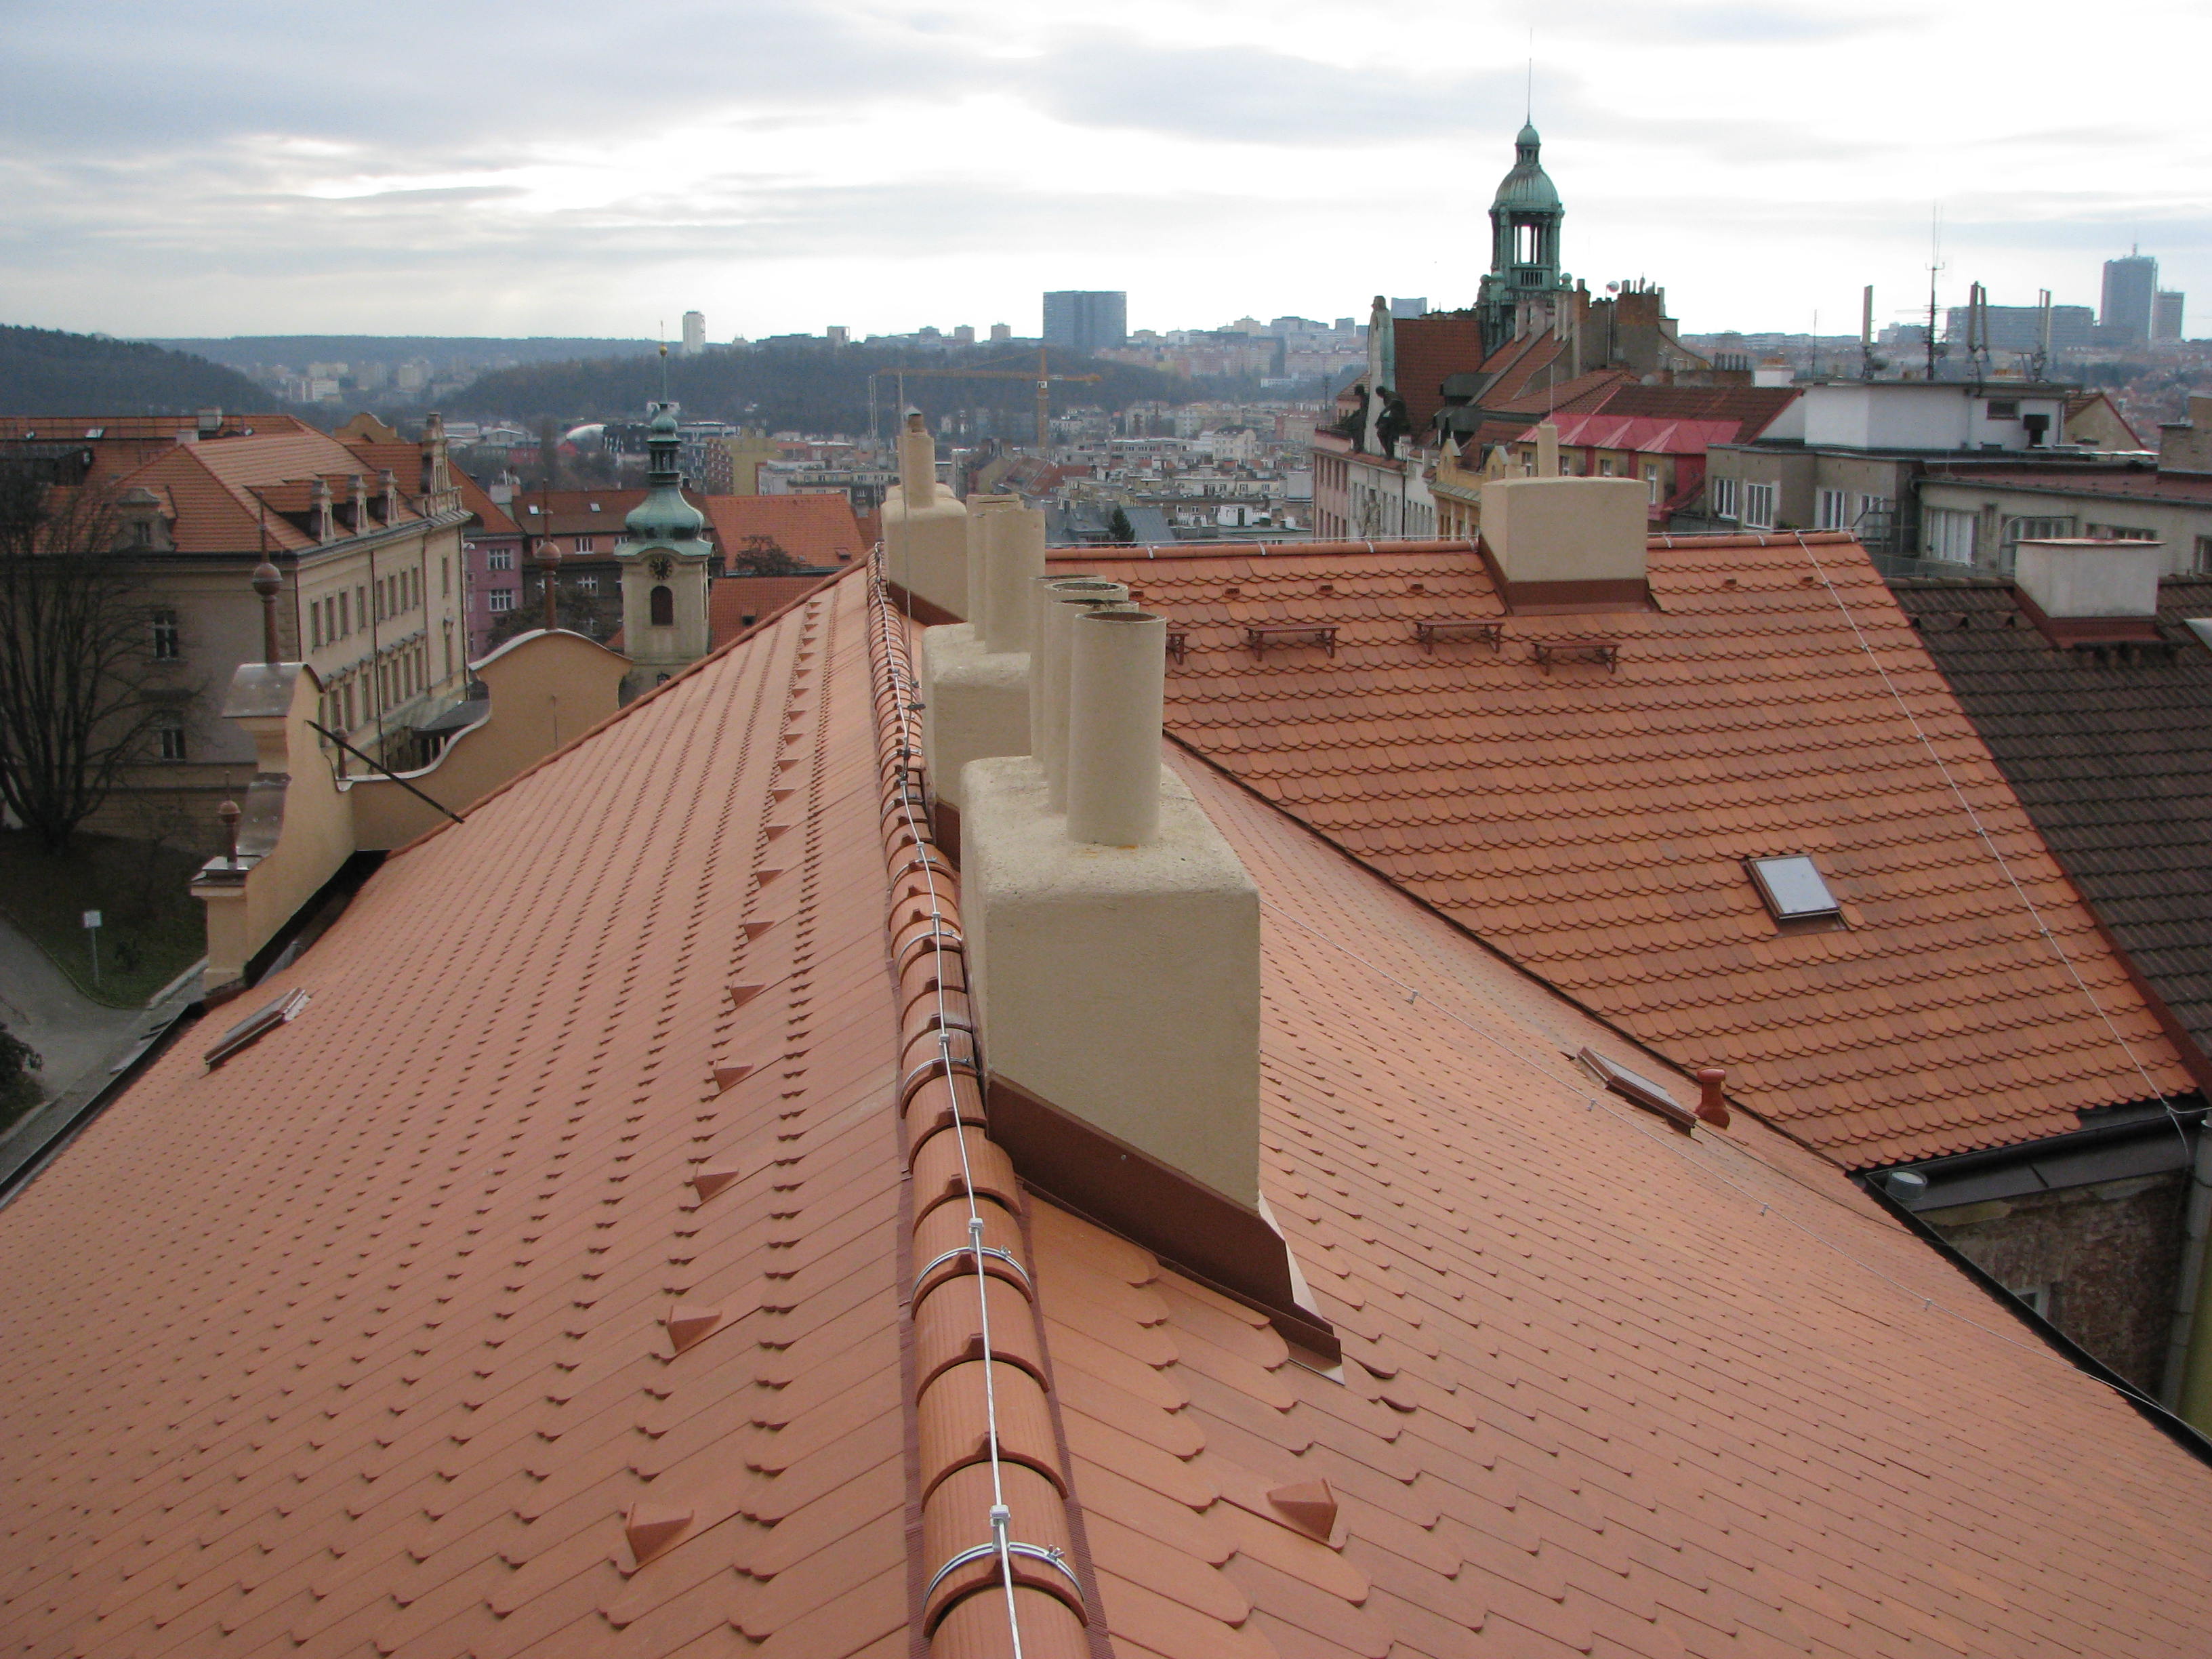 rekonstrukce střechy STARWORK